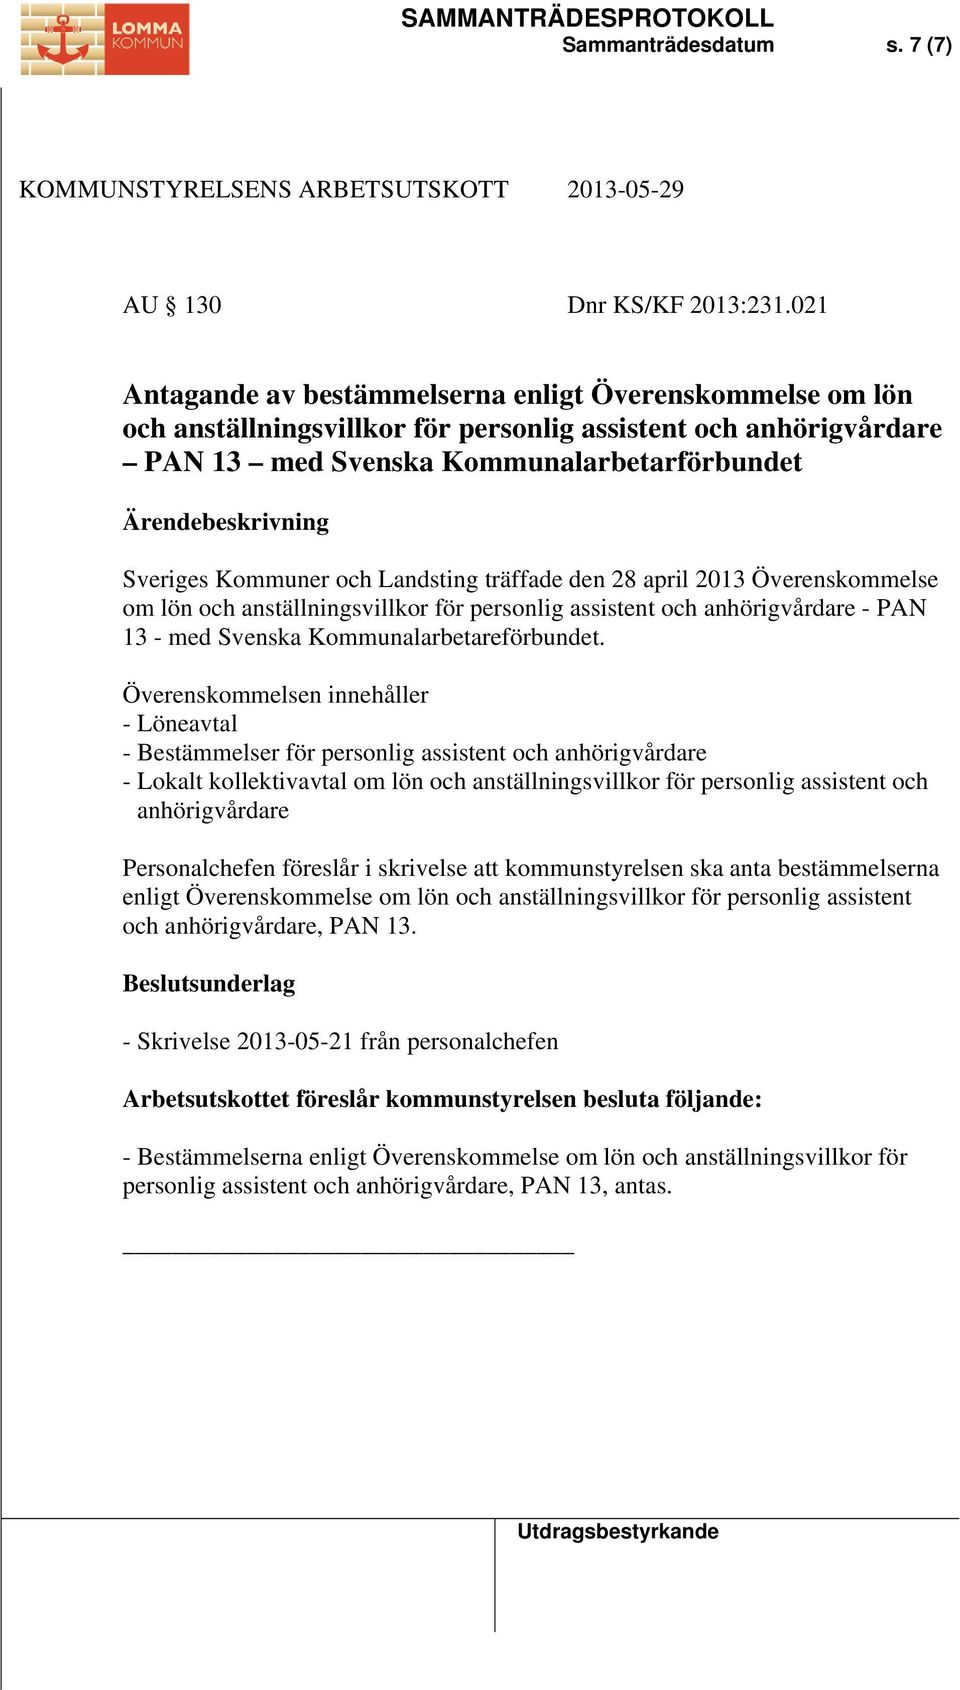 Landsting träffade den 28 april 2013 Överenskommelse om lön och anställningsvillkor för personlig assistent och anhörigvårdare - PAN 13 - med Svenska Kommunalarbetareförbundet.